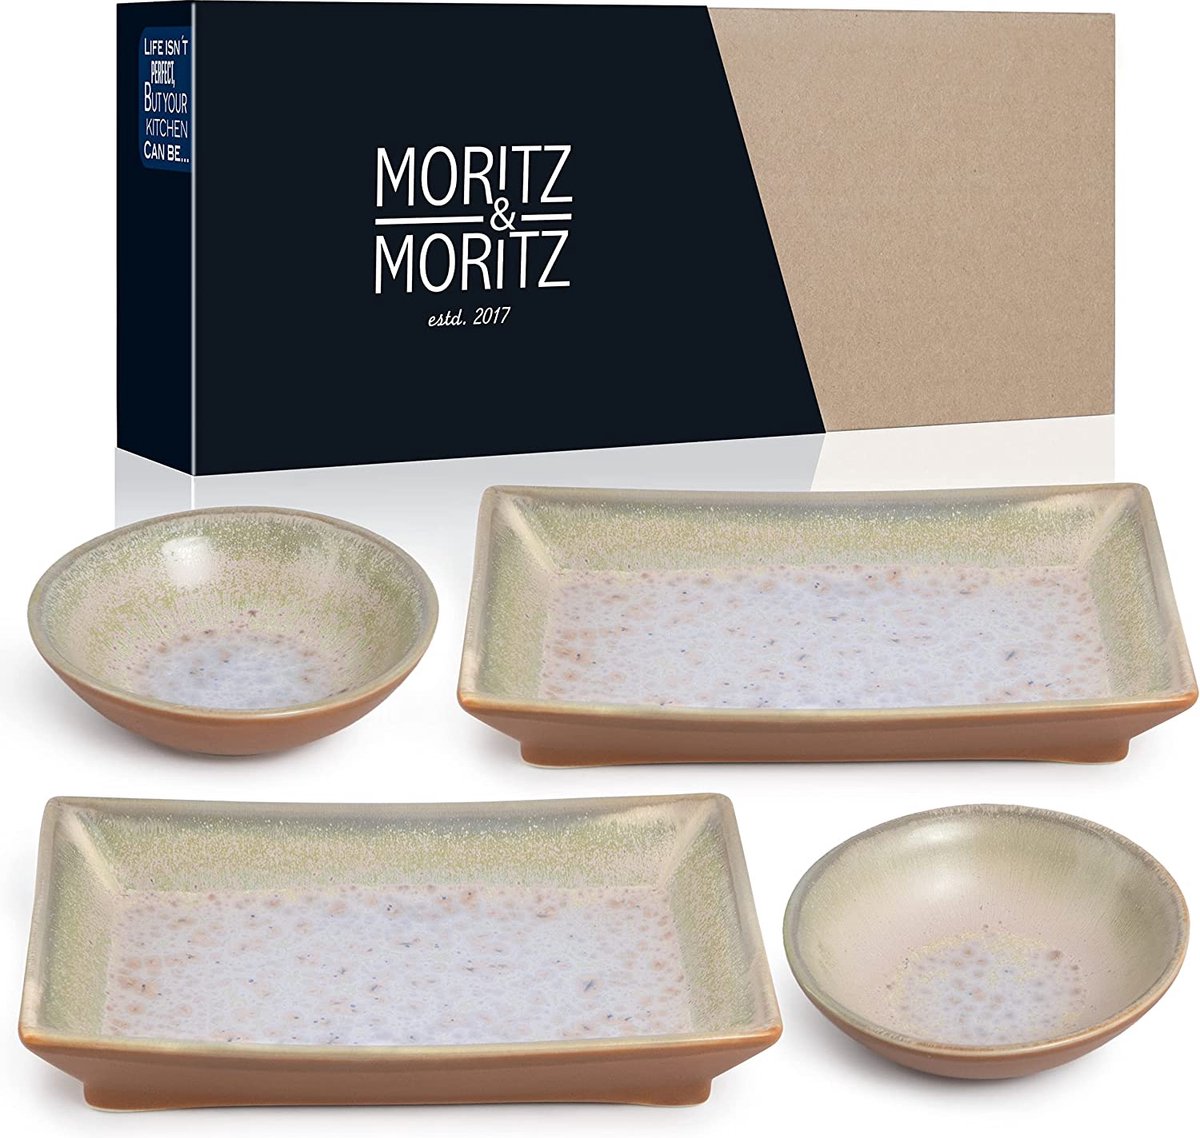 Moritz & Moritz Sushi serviesset voor 2 personen, sushi-serveerset met 2 sushiborden en 2 sushi-dip-schaaltjes, beige-paars met reactief glazuur